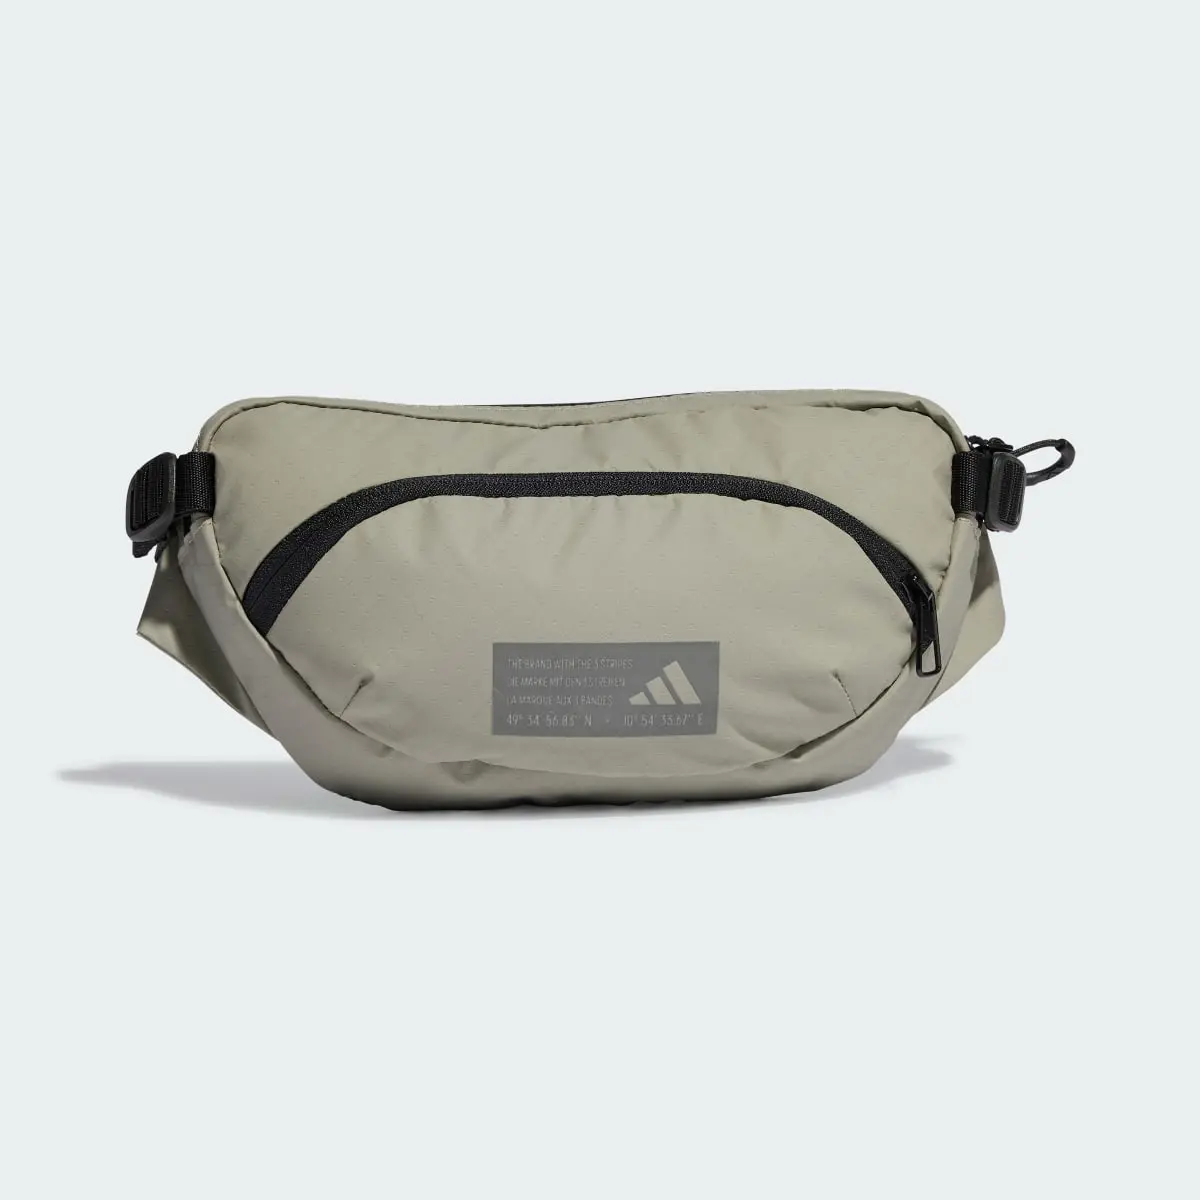 Adidas Hybrid Waist Bag. 2